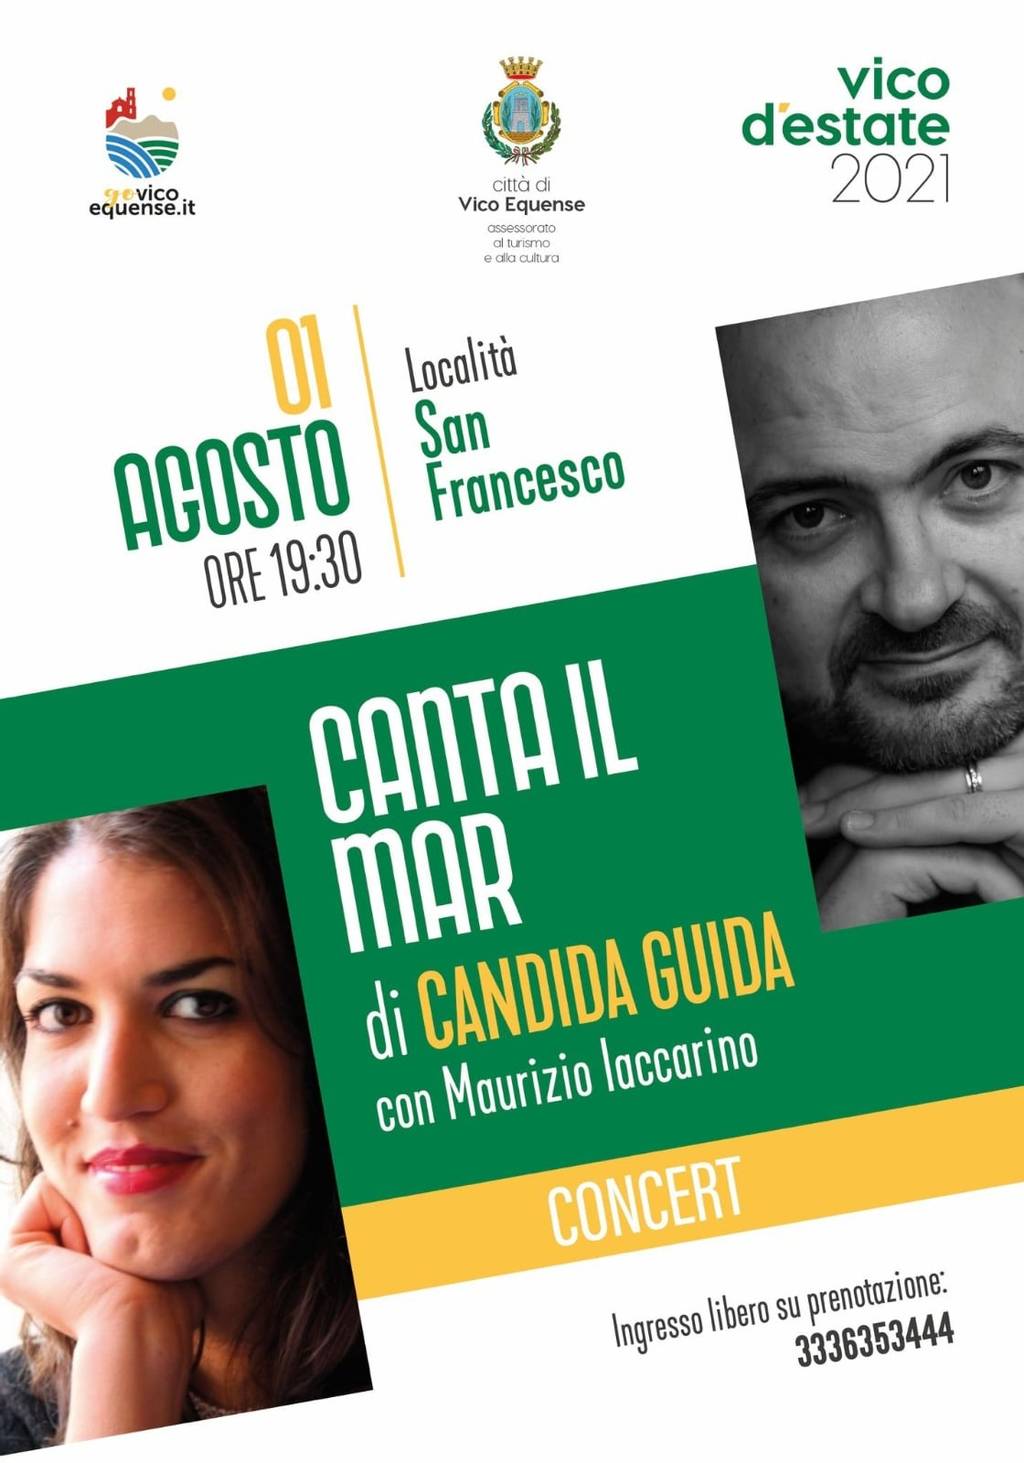 "Canta Il Mar" concert